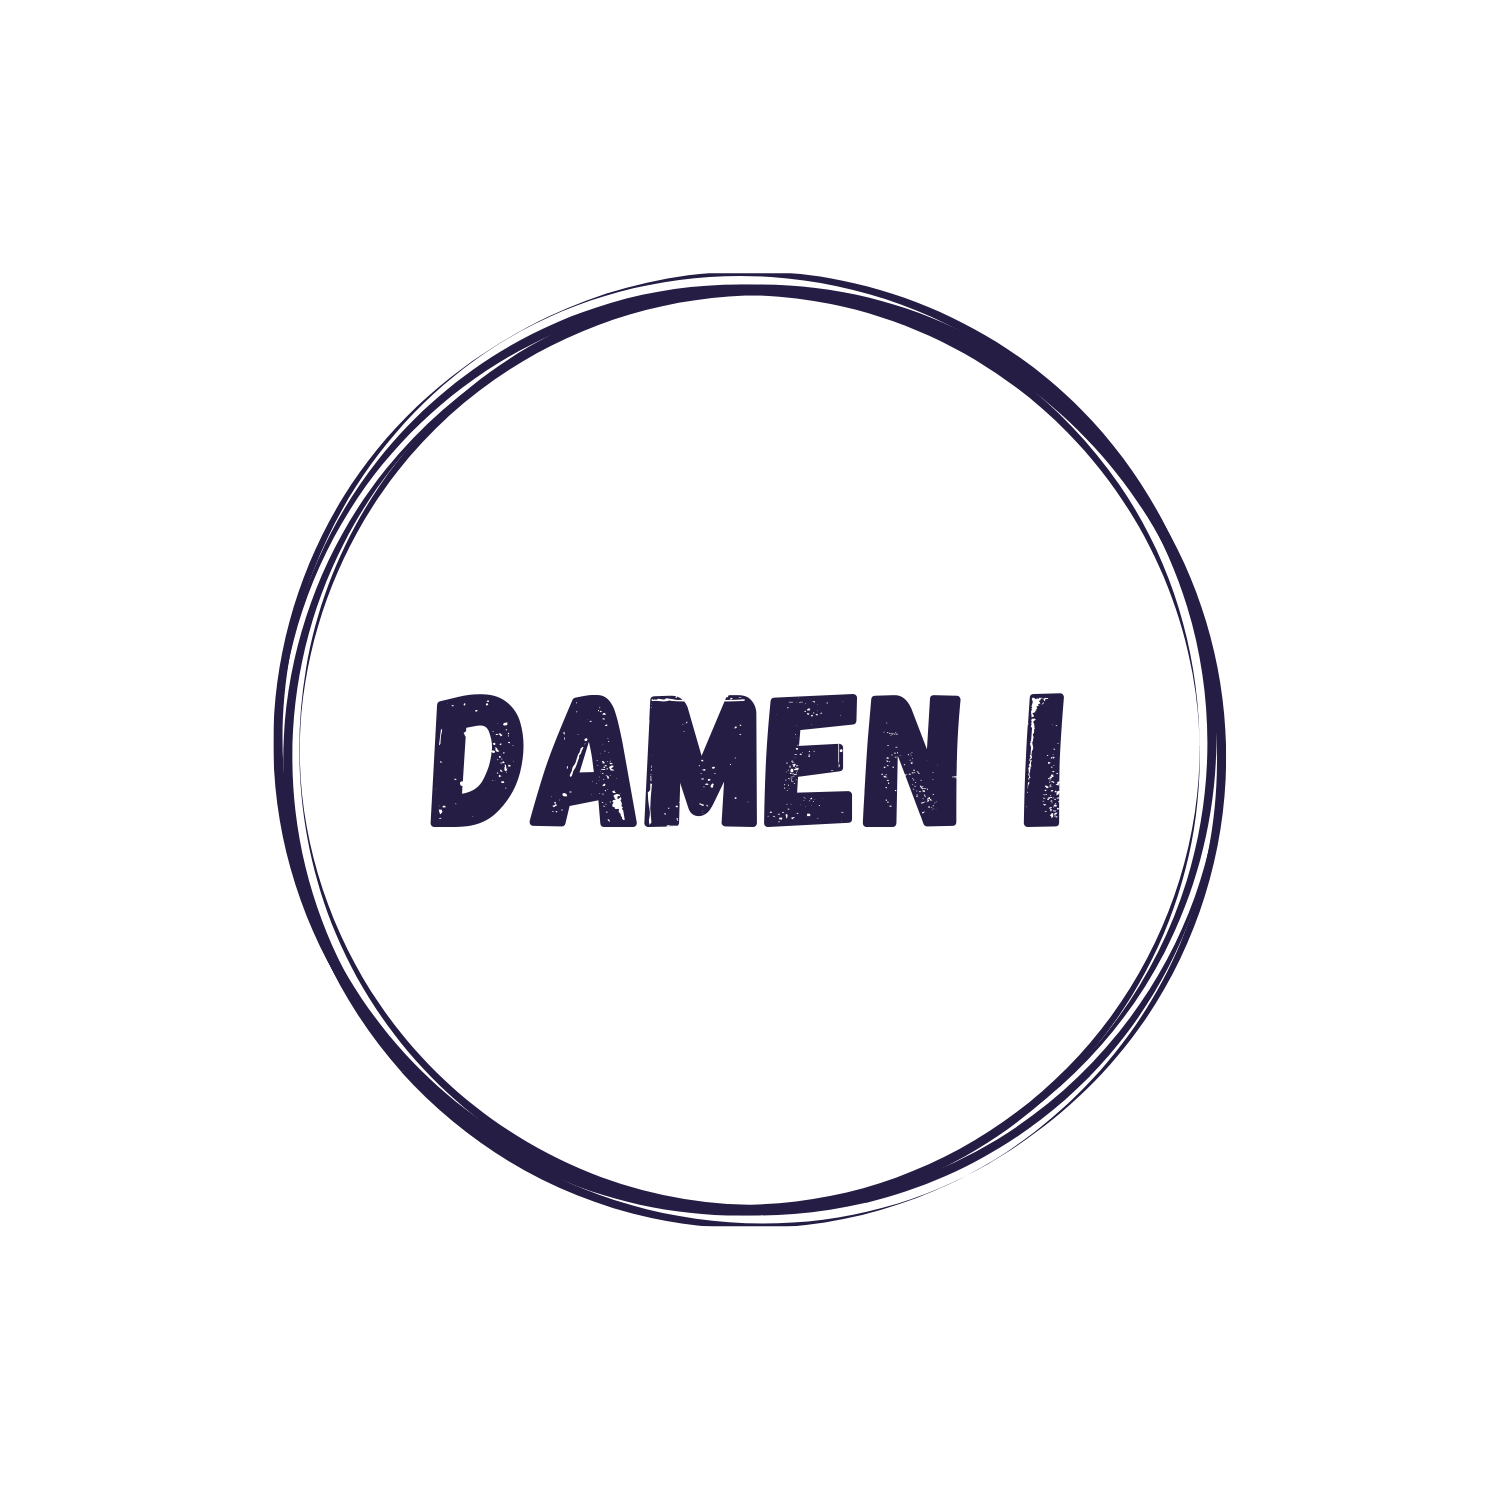 DAMEN 1